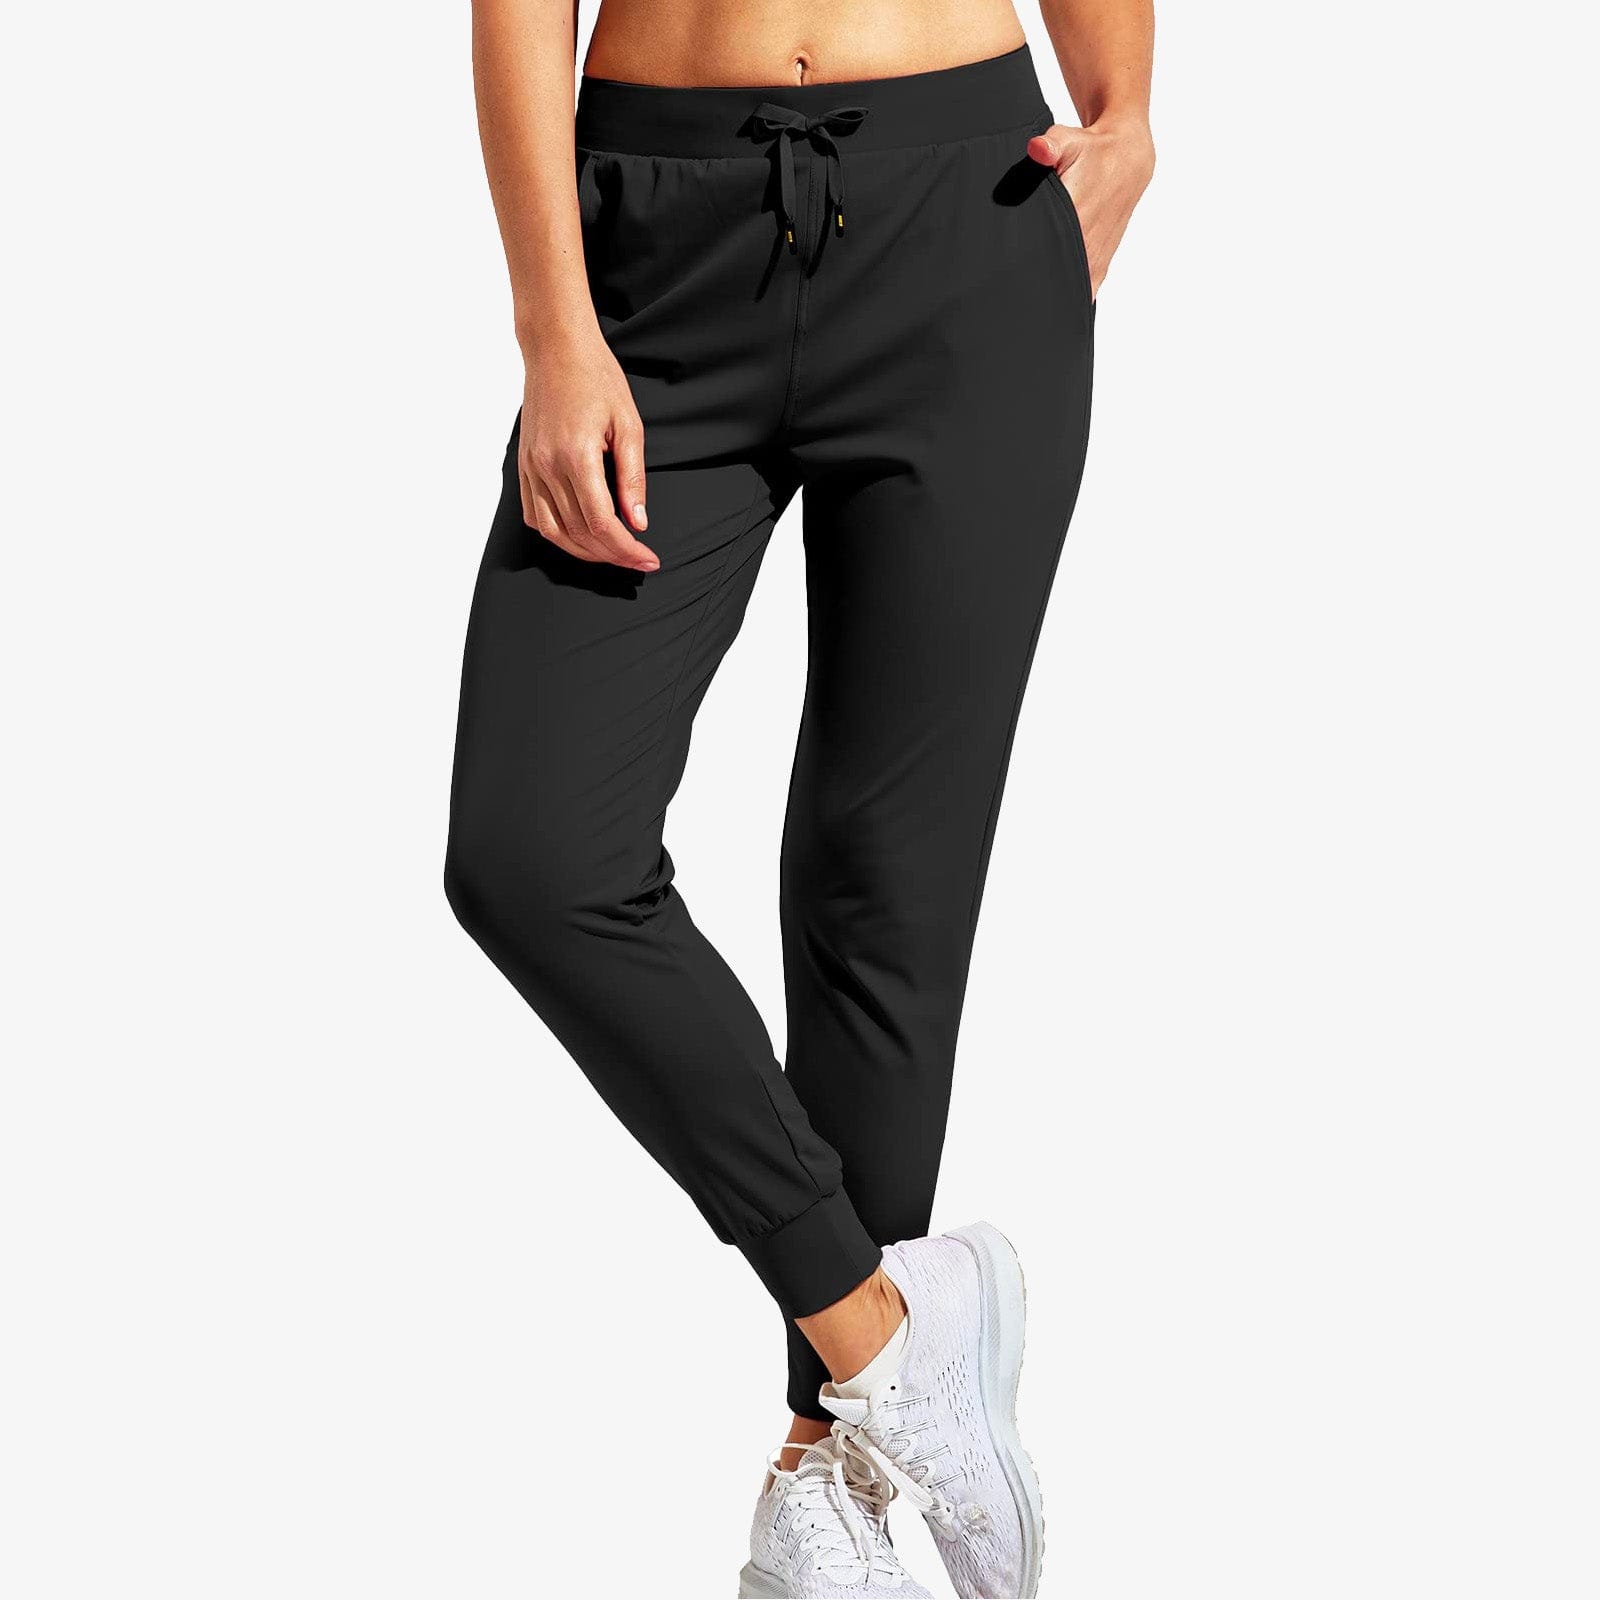 Pantalon de jogging Nike Air Large pour Homme (Rouge) - Taille M